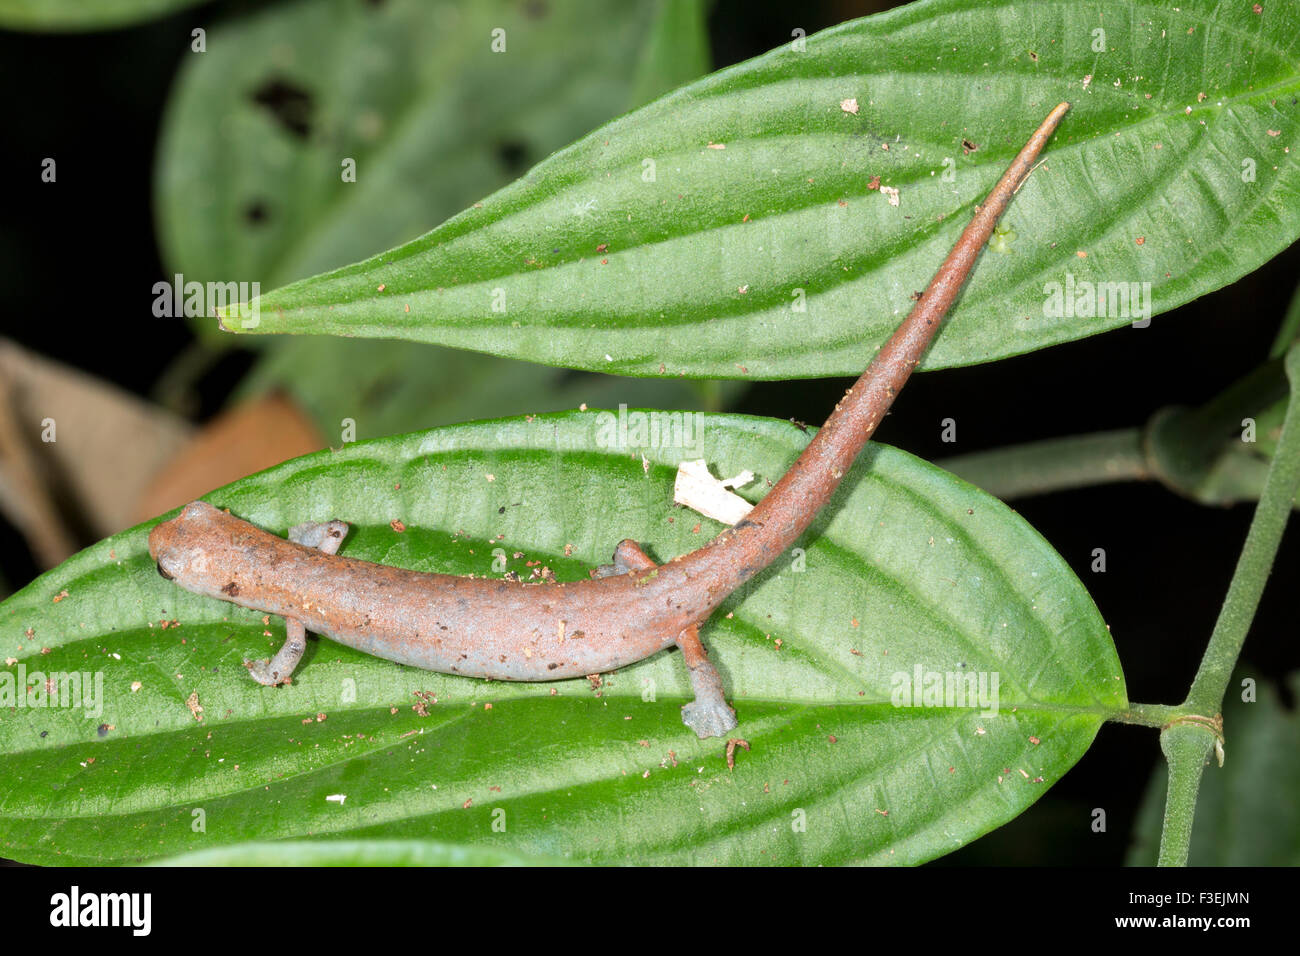 Amazon Climbing Salamander (Bolitoglossa peruviana) Stock Photo